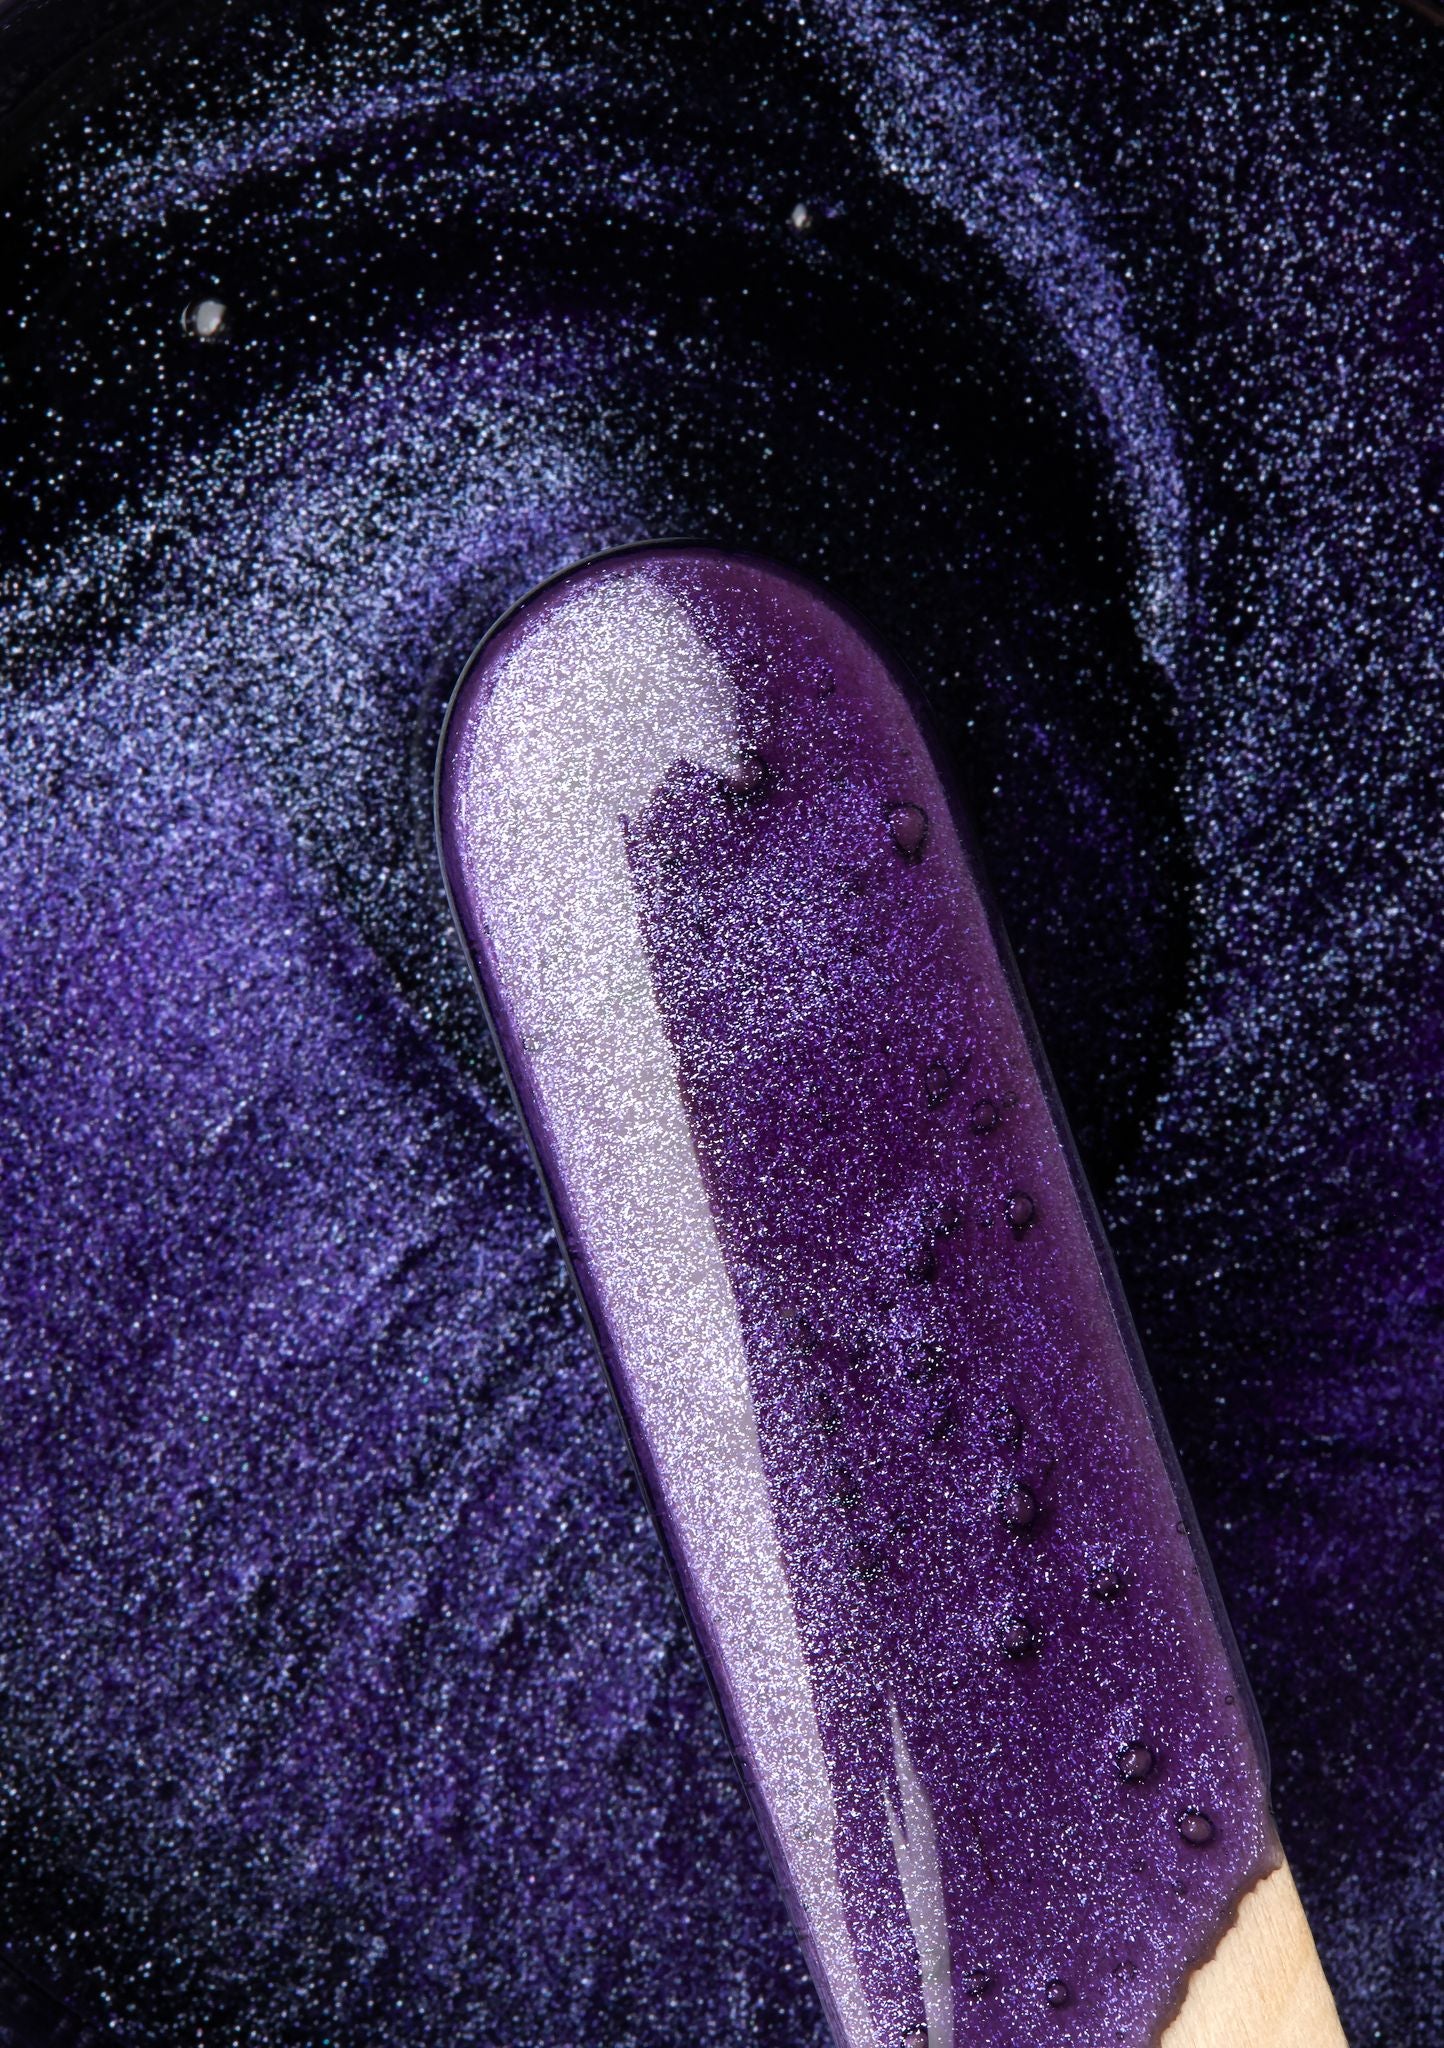 bikini waxing spatula in sparkling purple wax